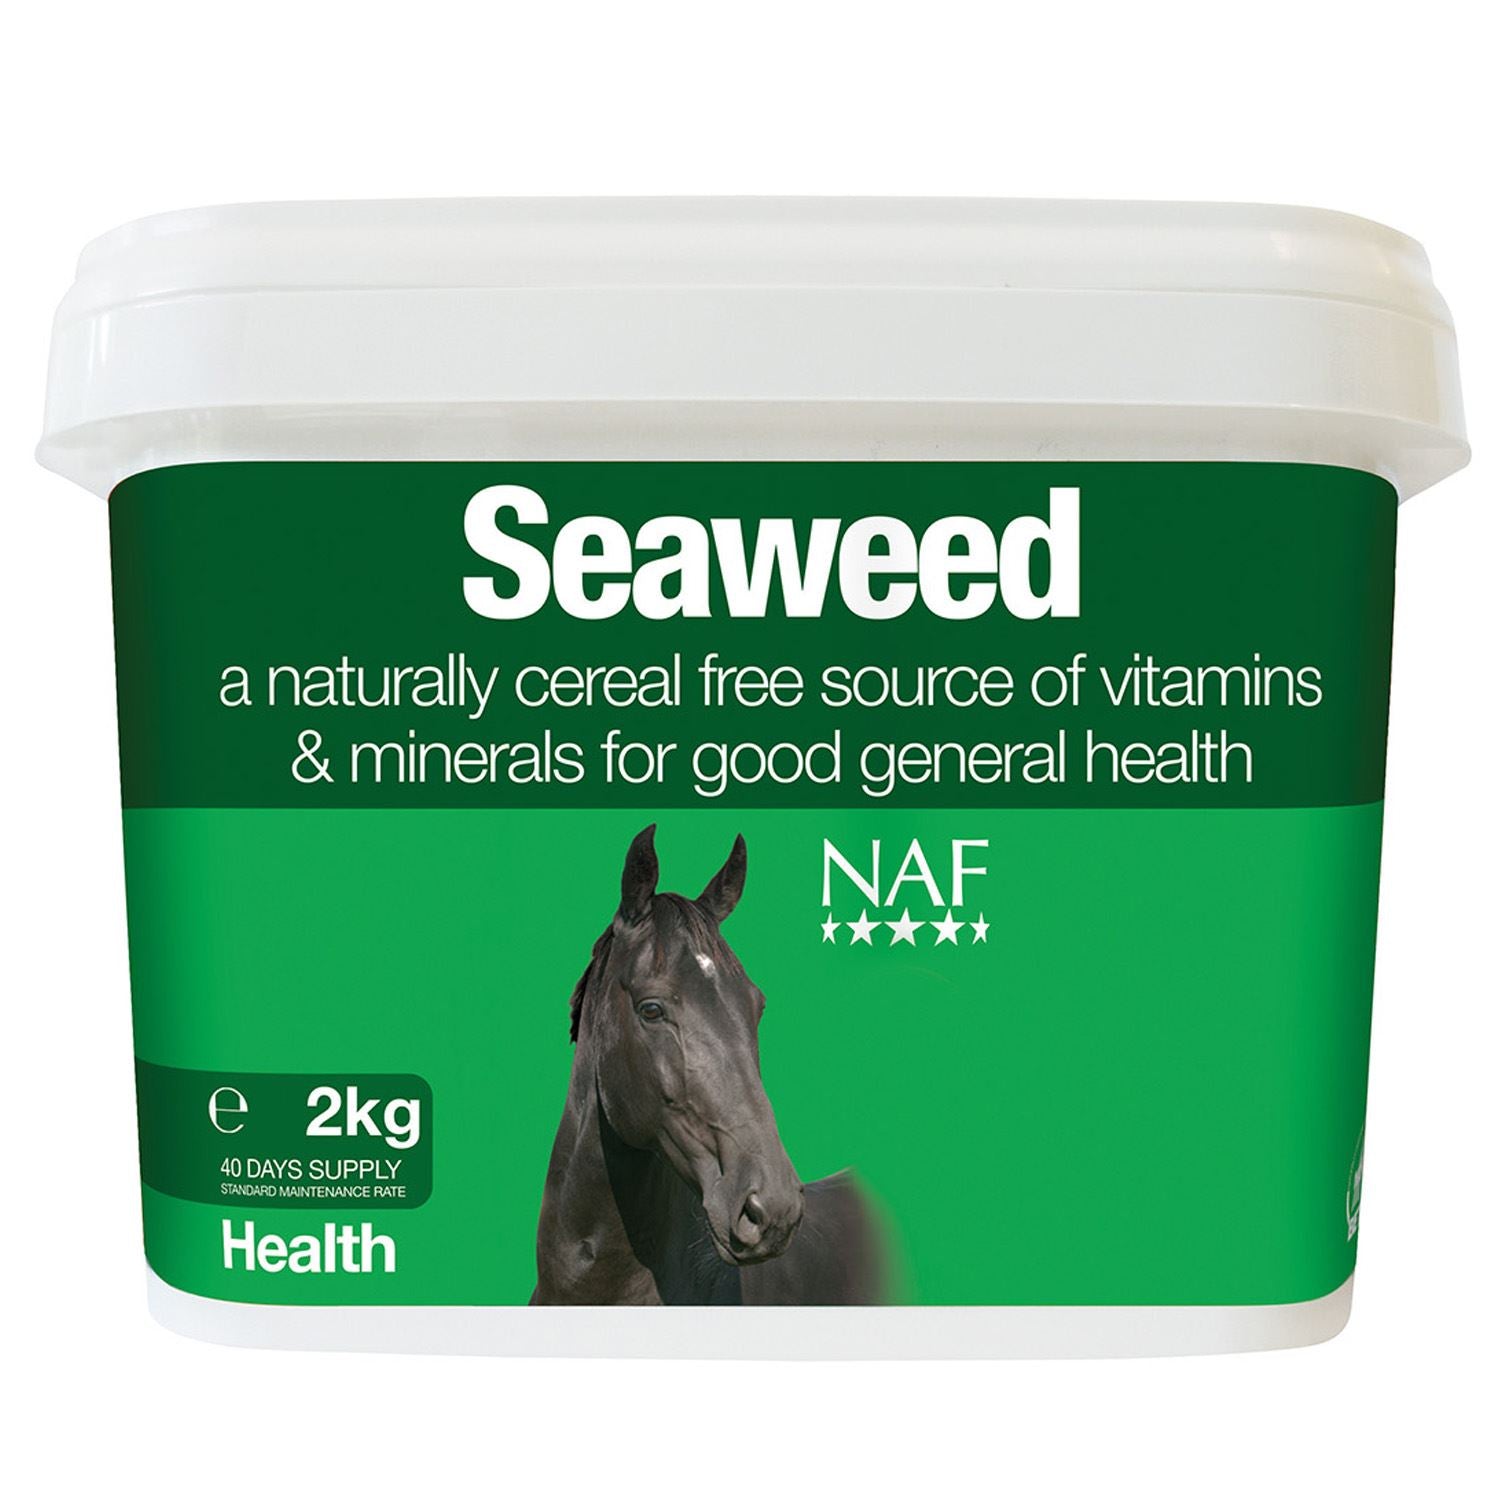 NAF Seaweed - Just Horse Riders